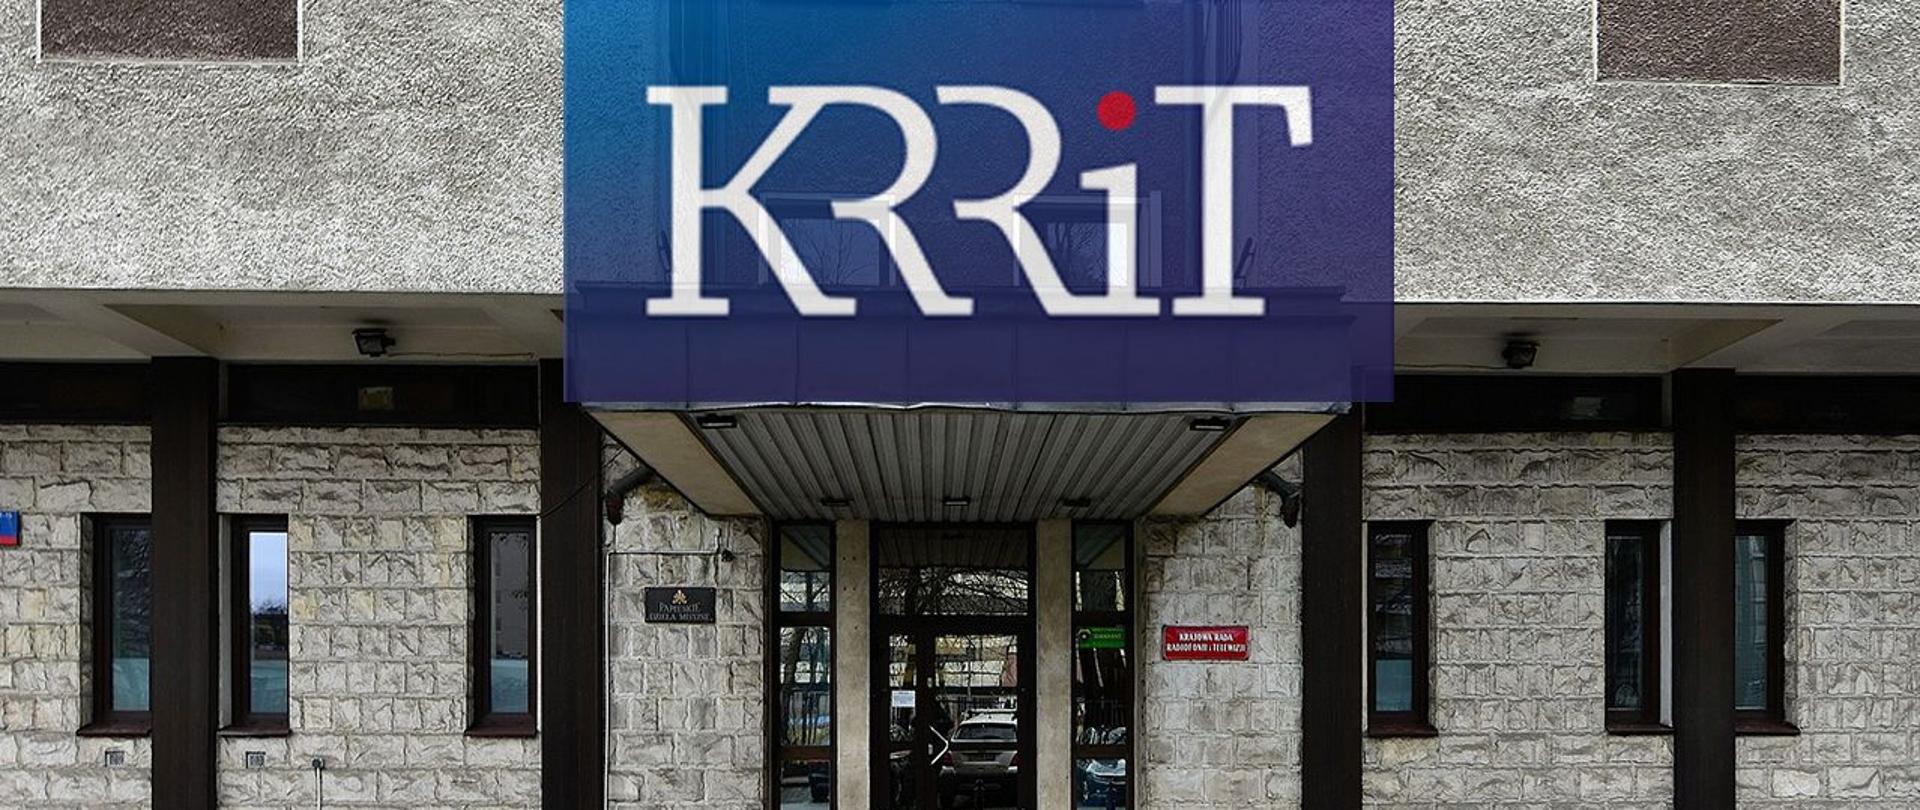 Napis "KRRiT" na tle siedziby Krajowej Rady Radiofonii i Telewizji.